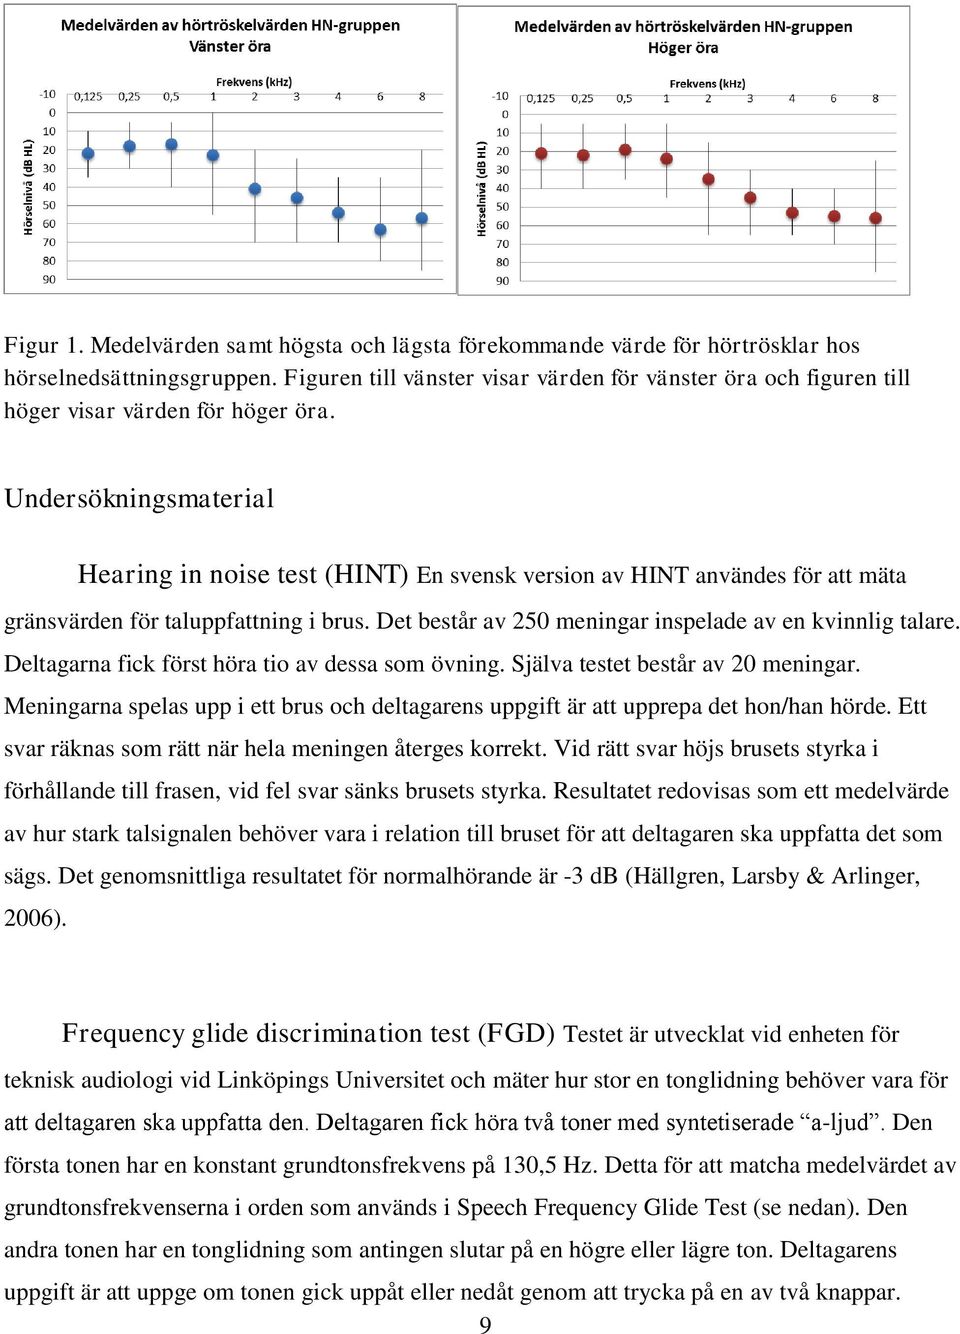 Undersökningsmaterial Hearing in noise test (HINT) En svensk version av HINT användes för att mäta gränsvärden för taluppfattning i brus. Det består av 250 meningar inspelade av en kvinnlig talare.